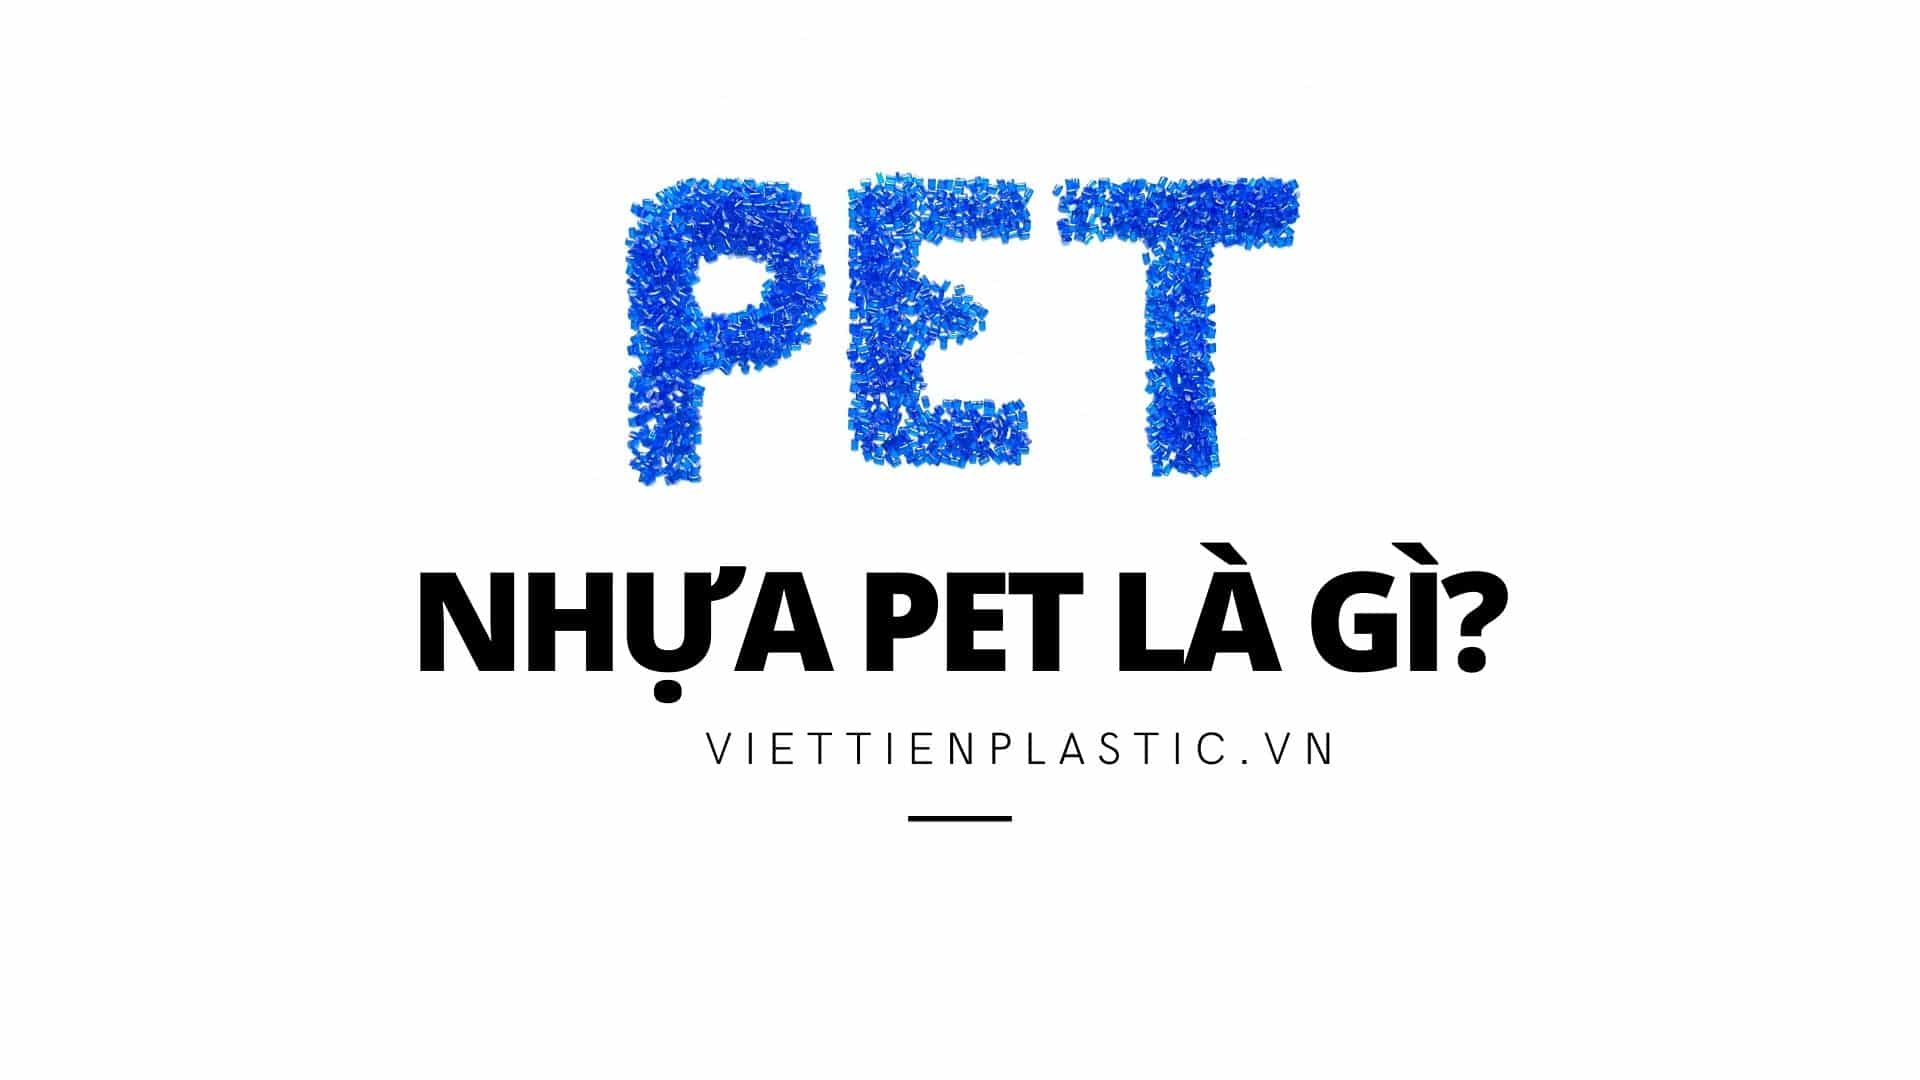 Nhựa nghĩa PET là gì?